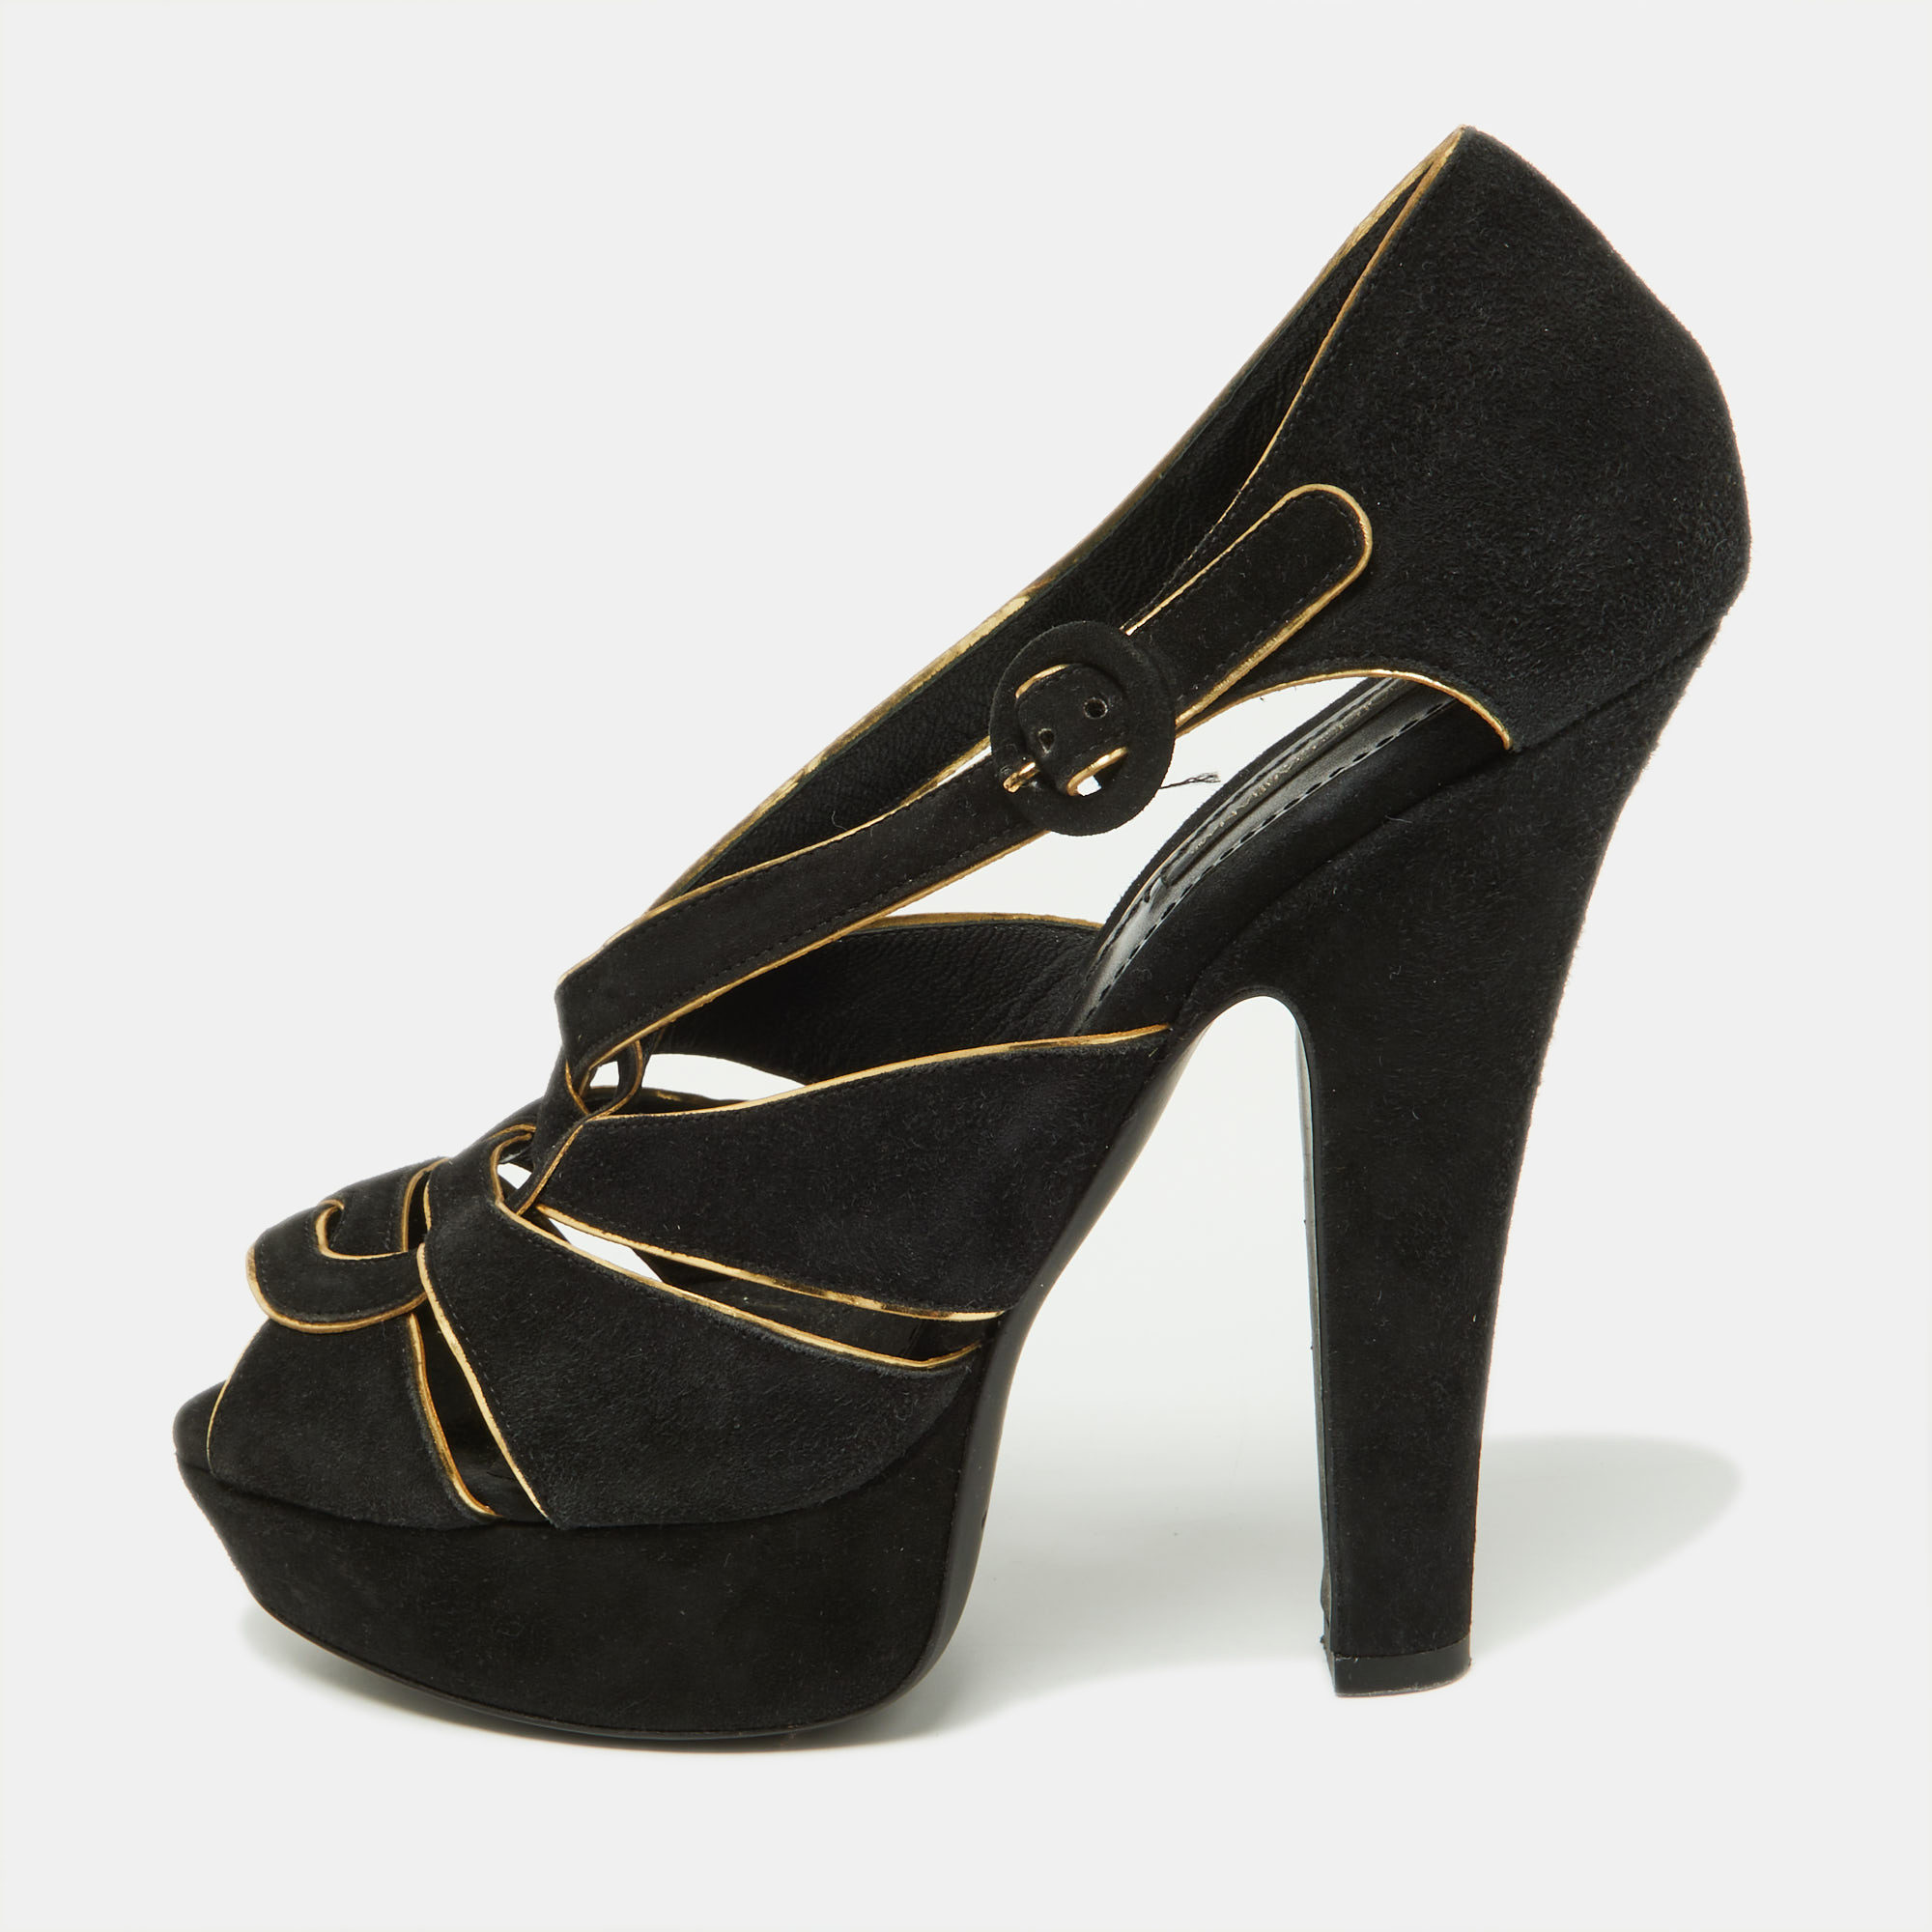 Dolce & Gabbana Black/Gold Suede Strappy Platform Sandals Size 39